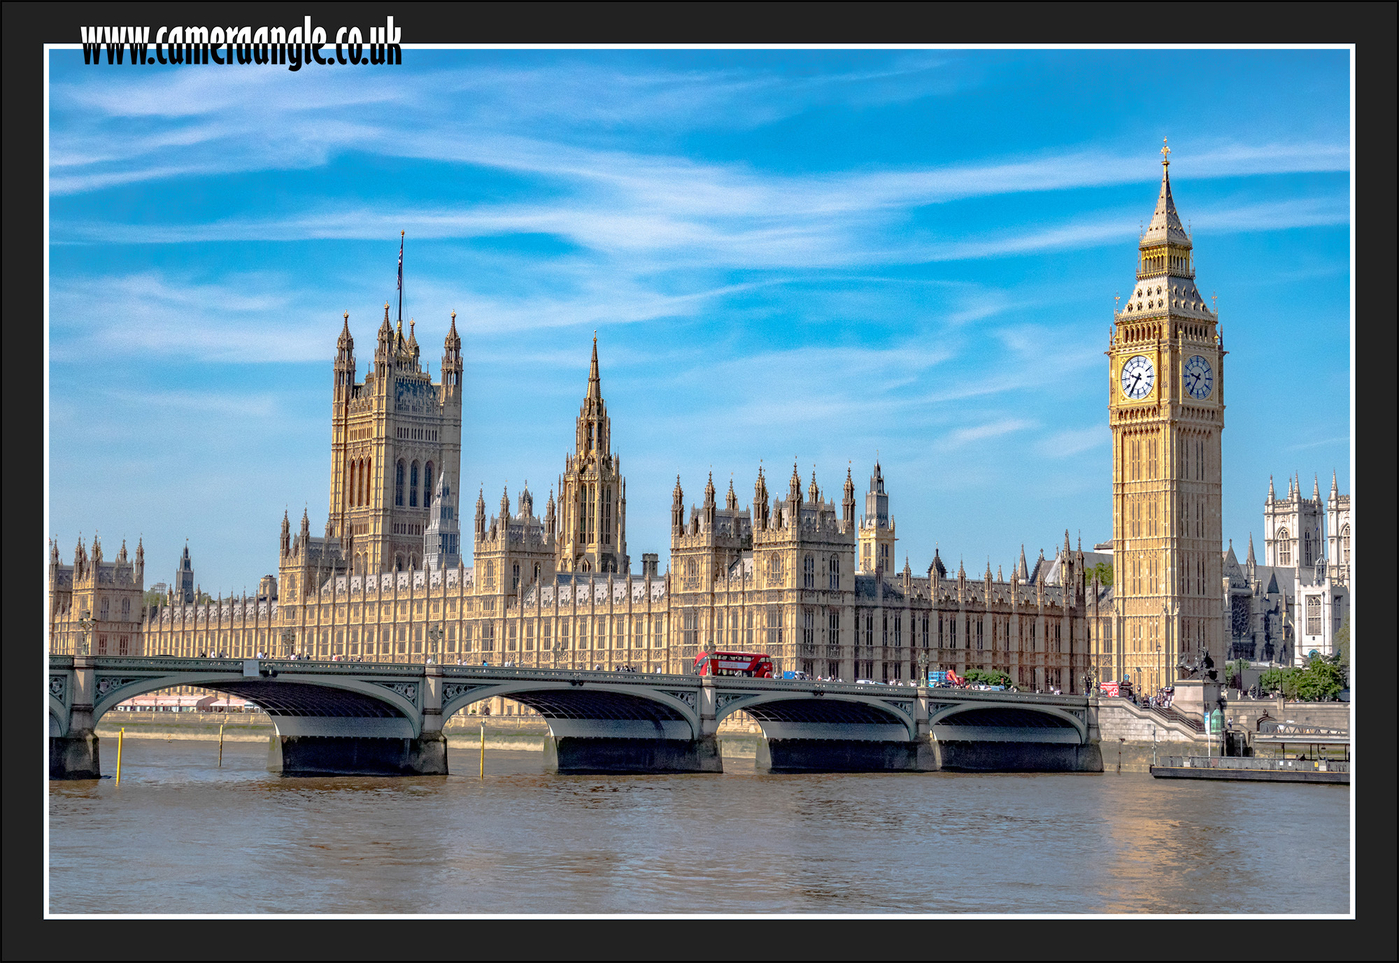 Westminster and Big Ben London
Keywords: Westminster Big Ben London